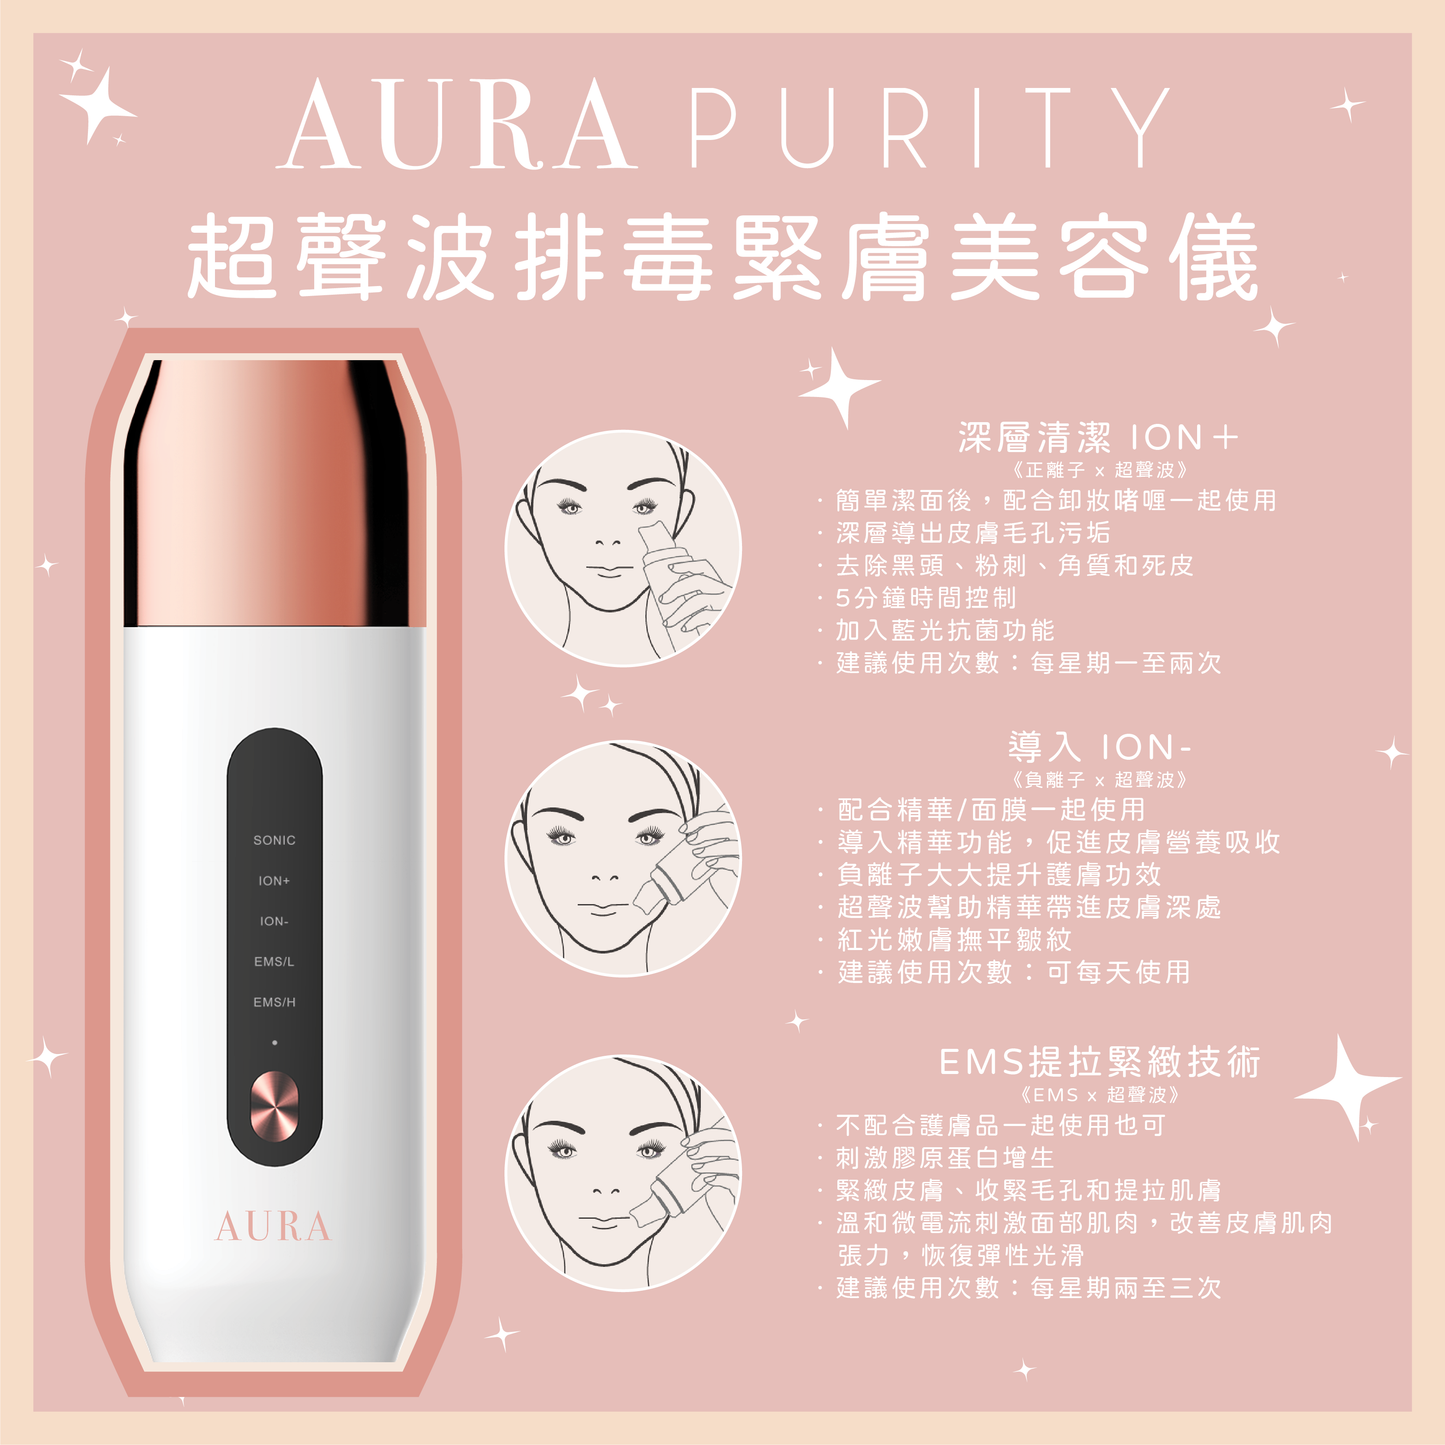 【8折優惠】Aura Purity 超聲波排毒緊膚美容儀 ♥再送Rejuvenation 3支